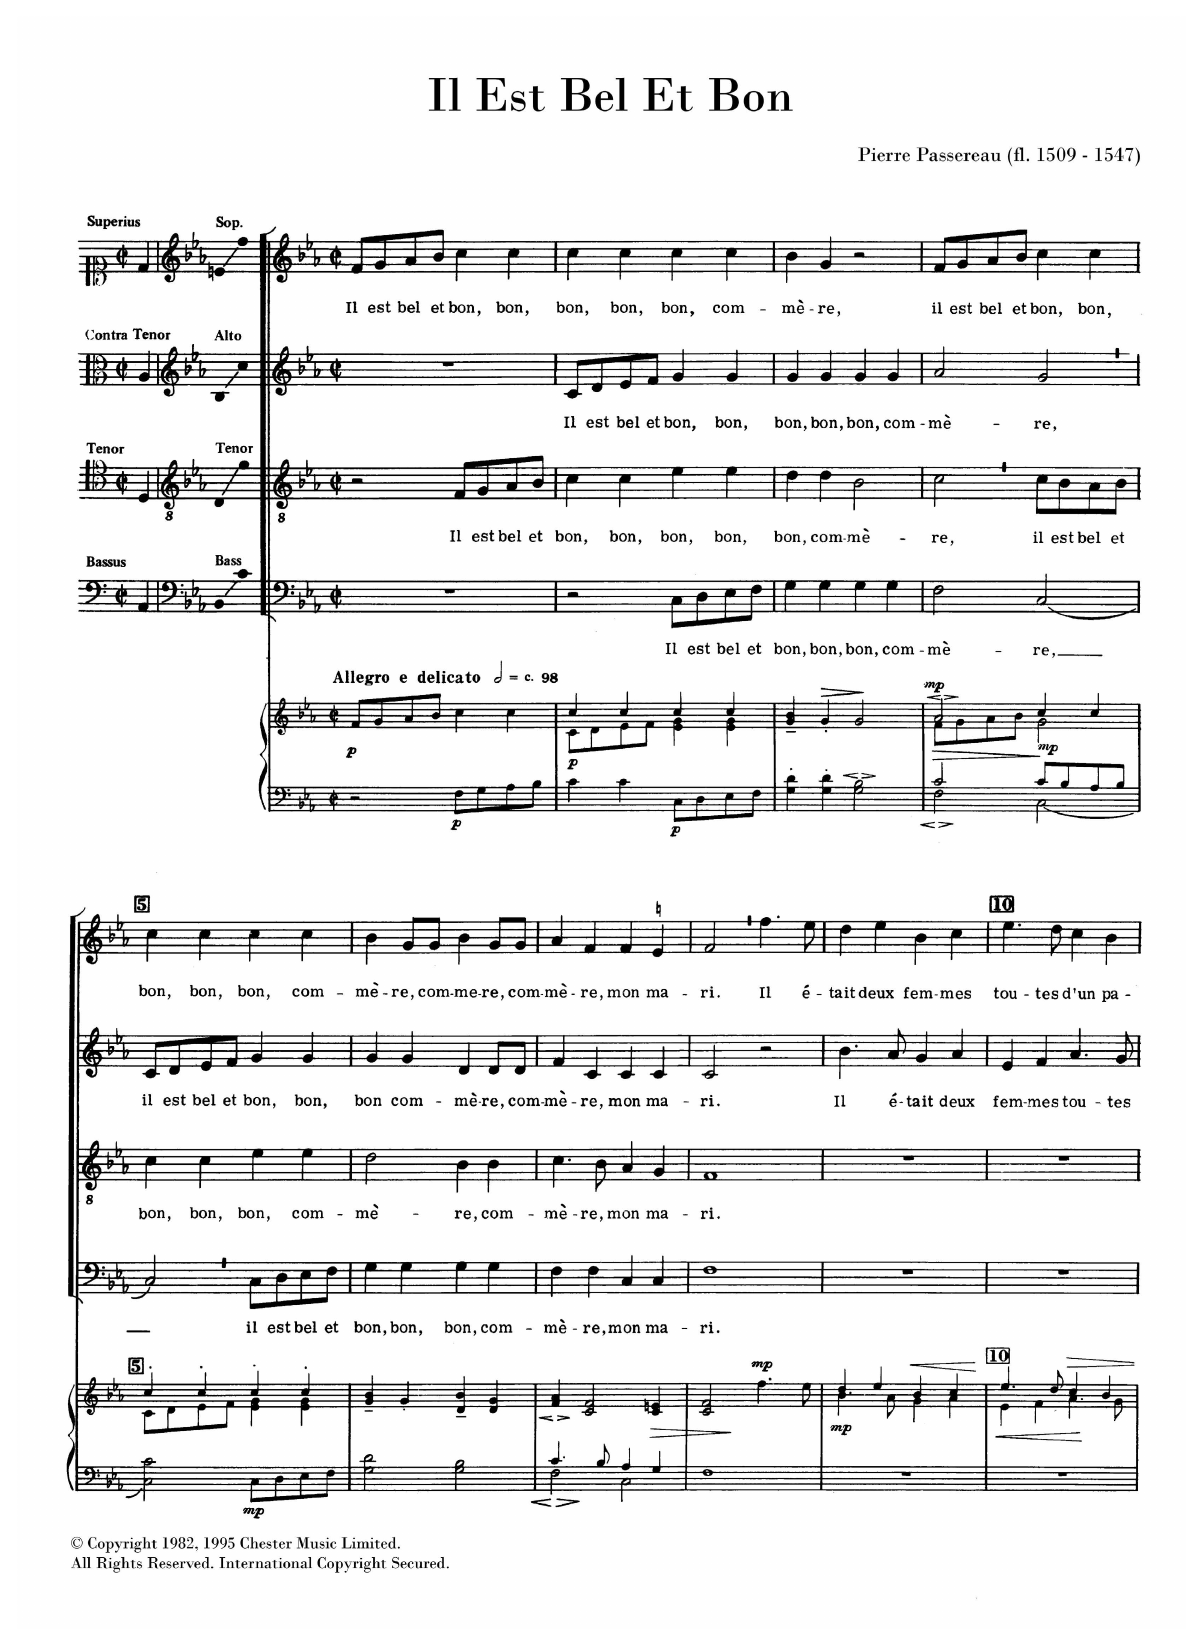 Pierre Passereau Il Est Bel Et Bon sheet music notes and chords arranged for SATB Choir